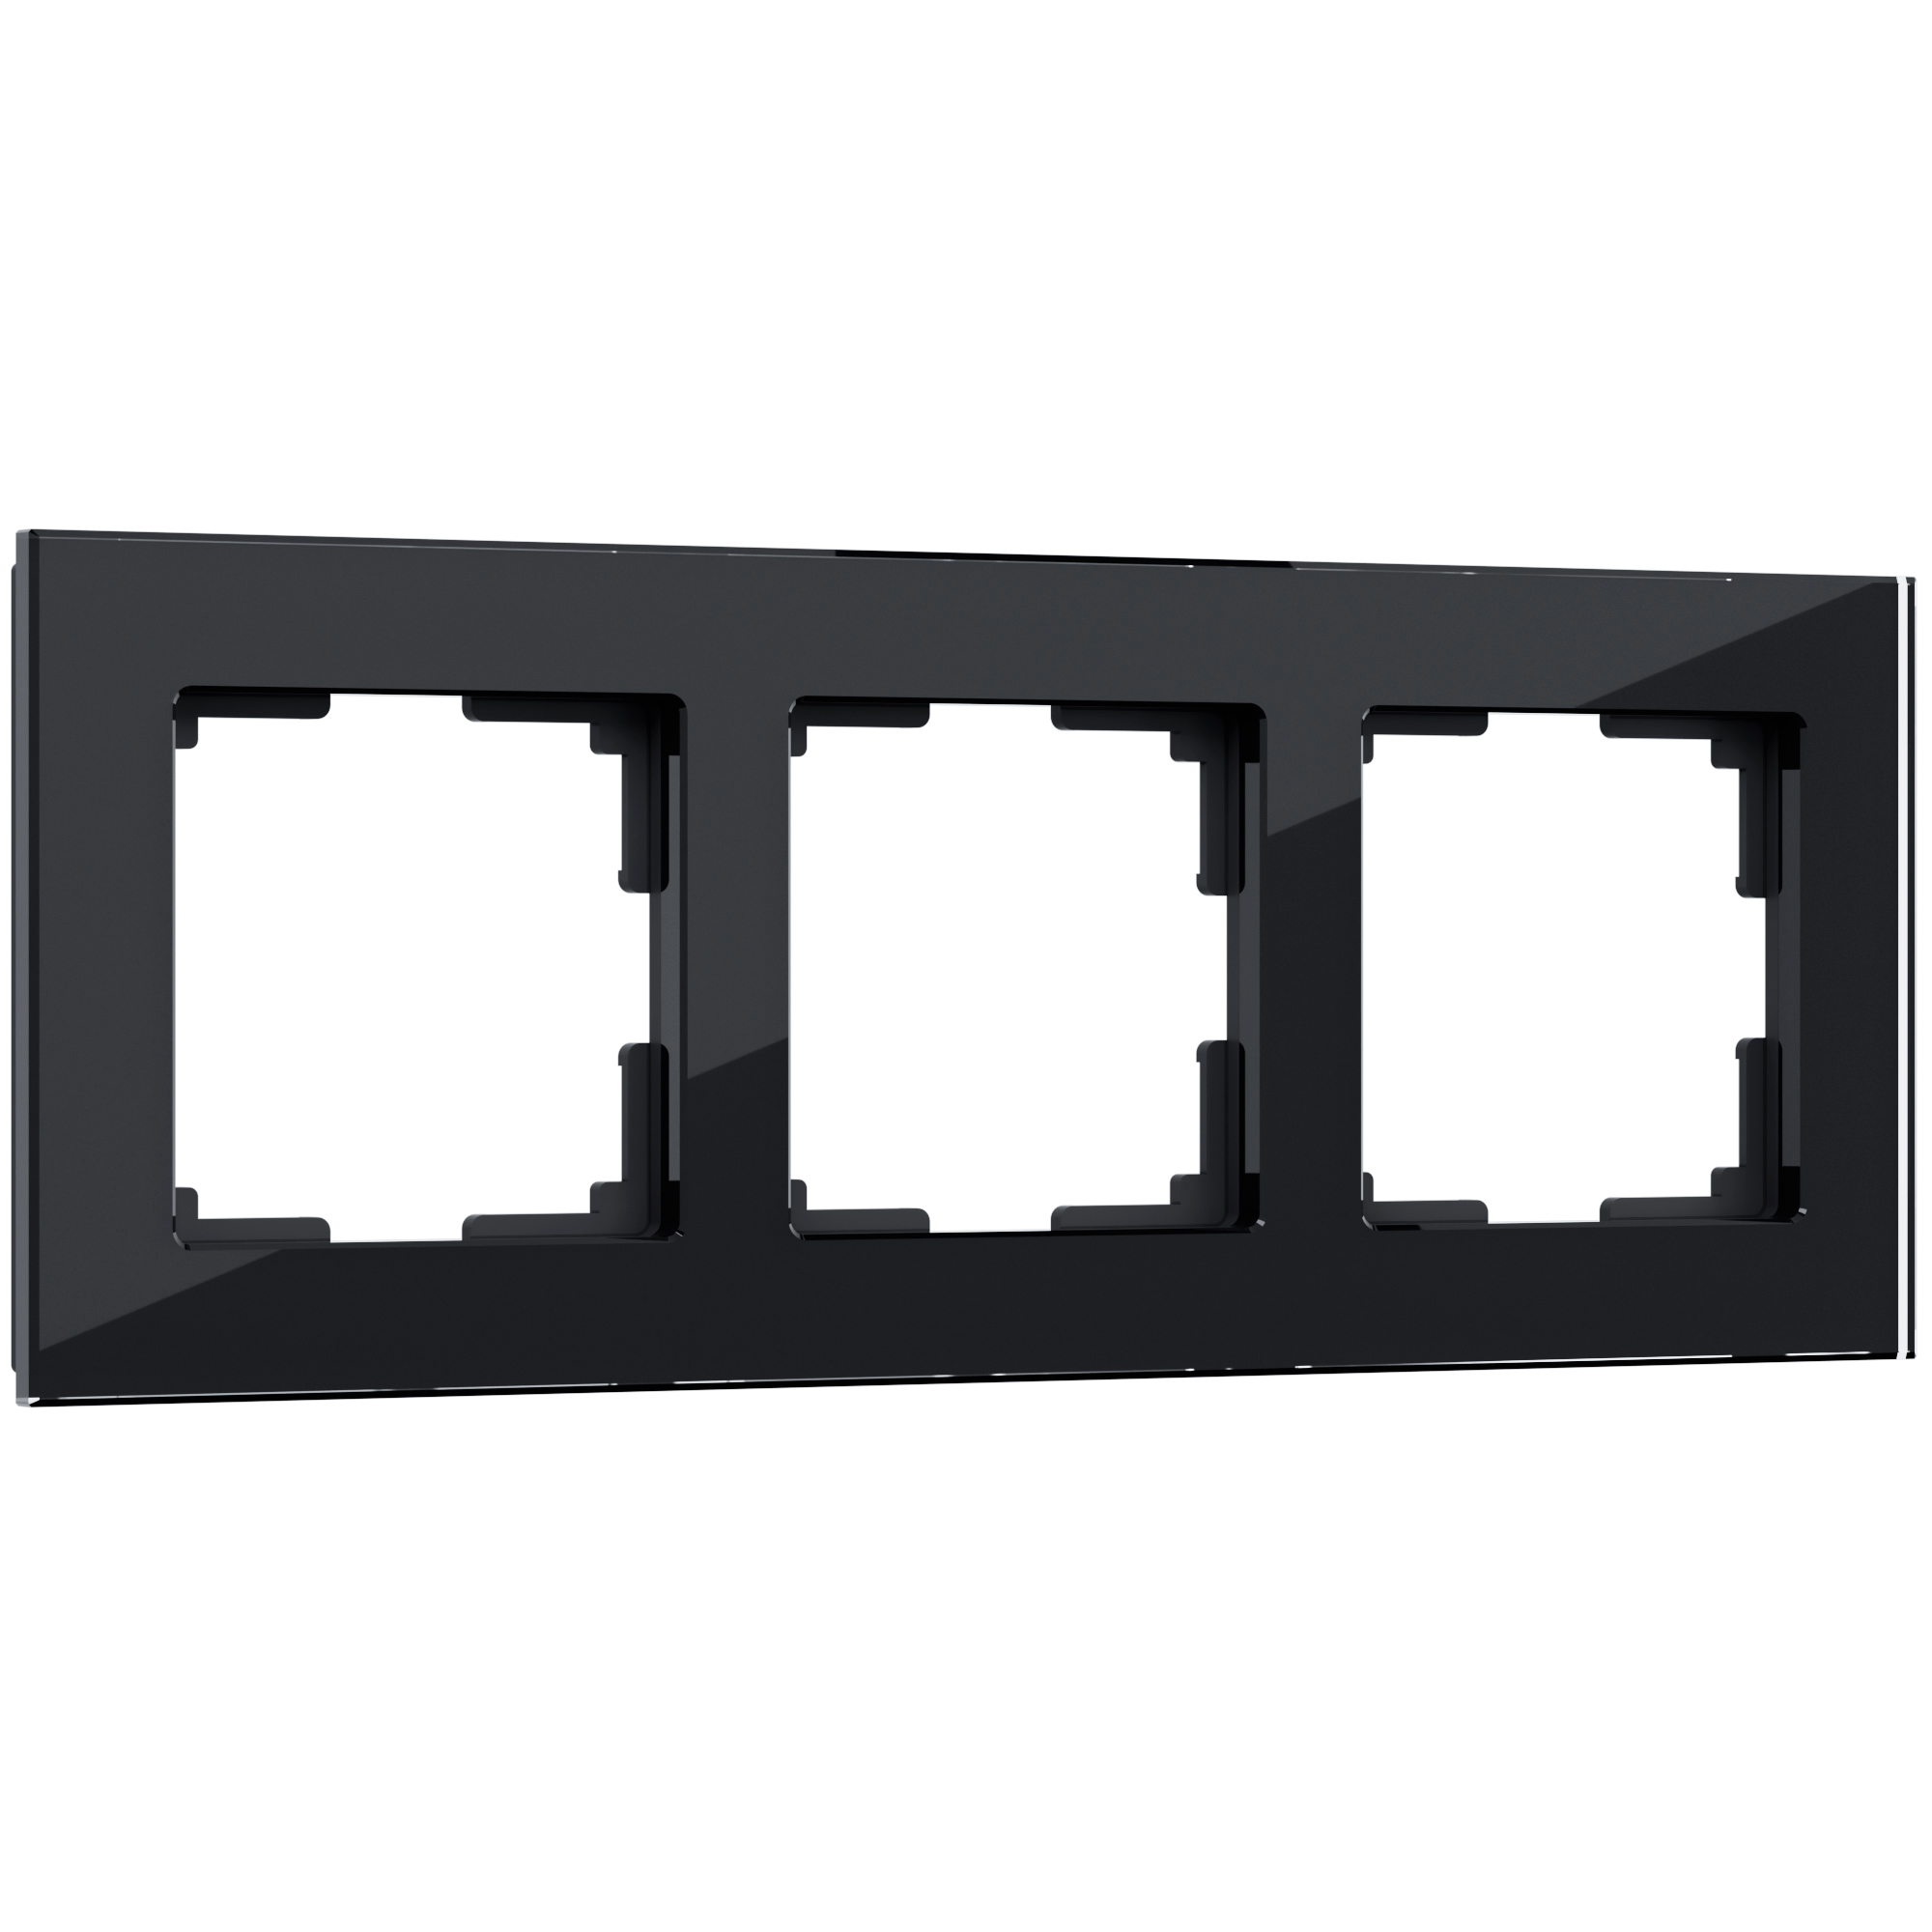 Рамка для розетки / выключателяна 3 поста Werkel  W0031108 Favorit черный стекло рамка на 3 поста werkel favorit w0031141 4690389183423